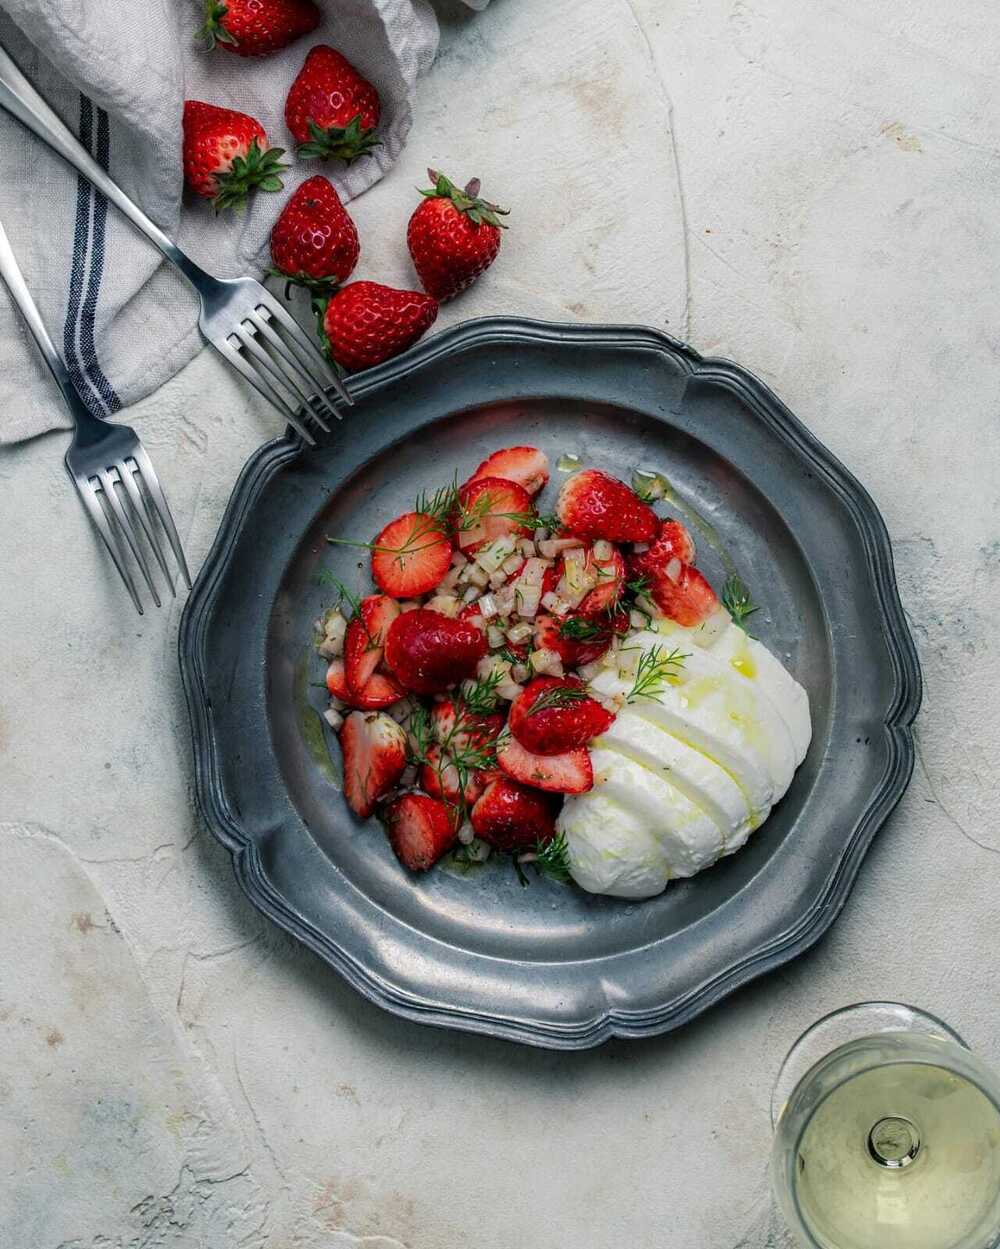 Inilah 8 Manfaat Makan Buah Strawberry bagi Ibu Hamil, Penasaran Apa Saja?